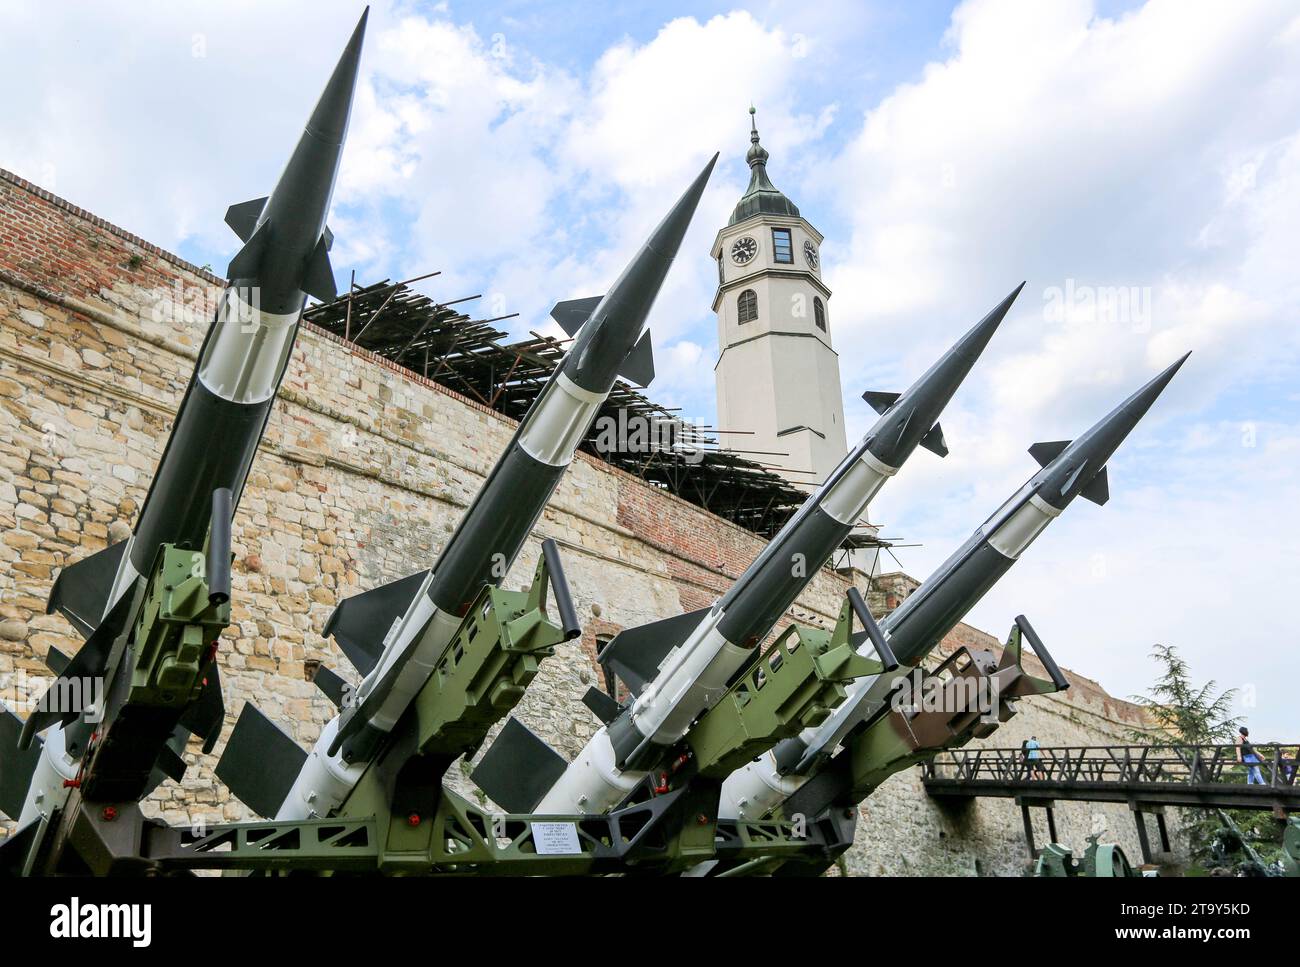 Belgrader Festung Militärmuseum: Serbische Armee S-125 Neva/Pechora Oberfläche-Luft-Raketenwerfer Verteidigungssystem & Uhrturm, Kalemegdan Park, Serbien Stockfoto